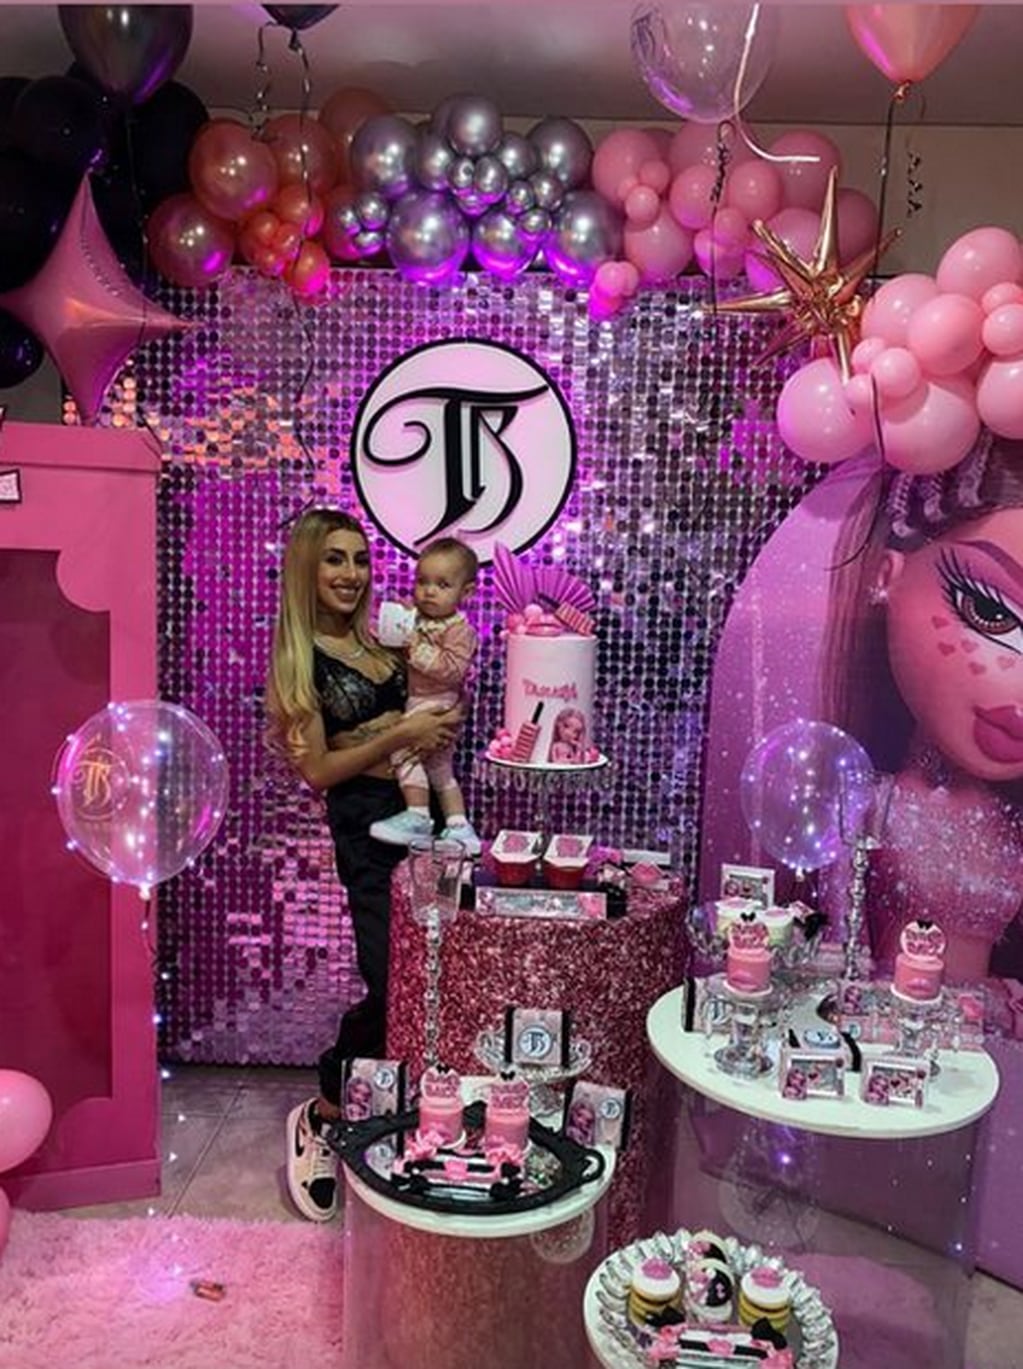 Tamara Báez festejó su cumpleaños con la temática de "Muñecas Bratz". Foto: Instagram.